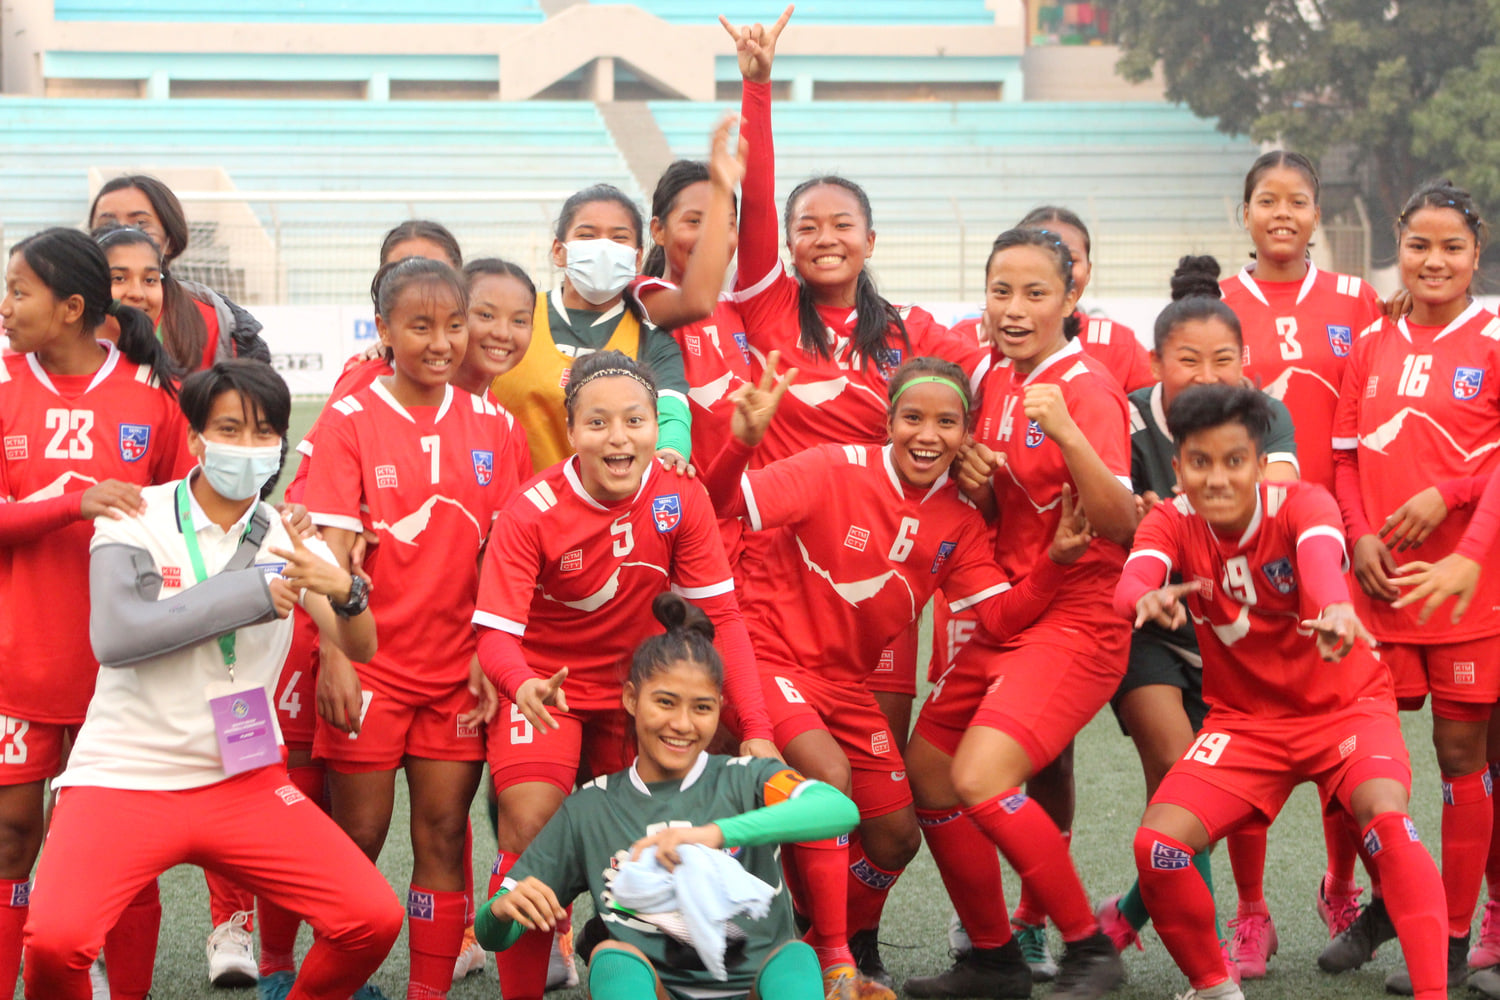 १९ वर्षमुनिको महिला साफ च्याम्पियनसिपमा आज नेपाल र भुटान खेल्दै